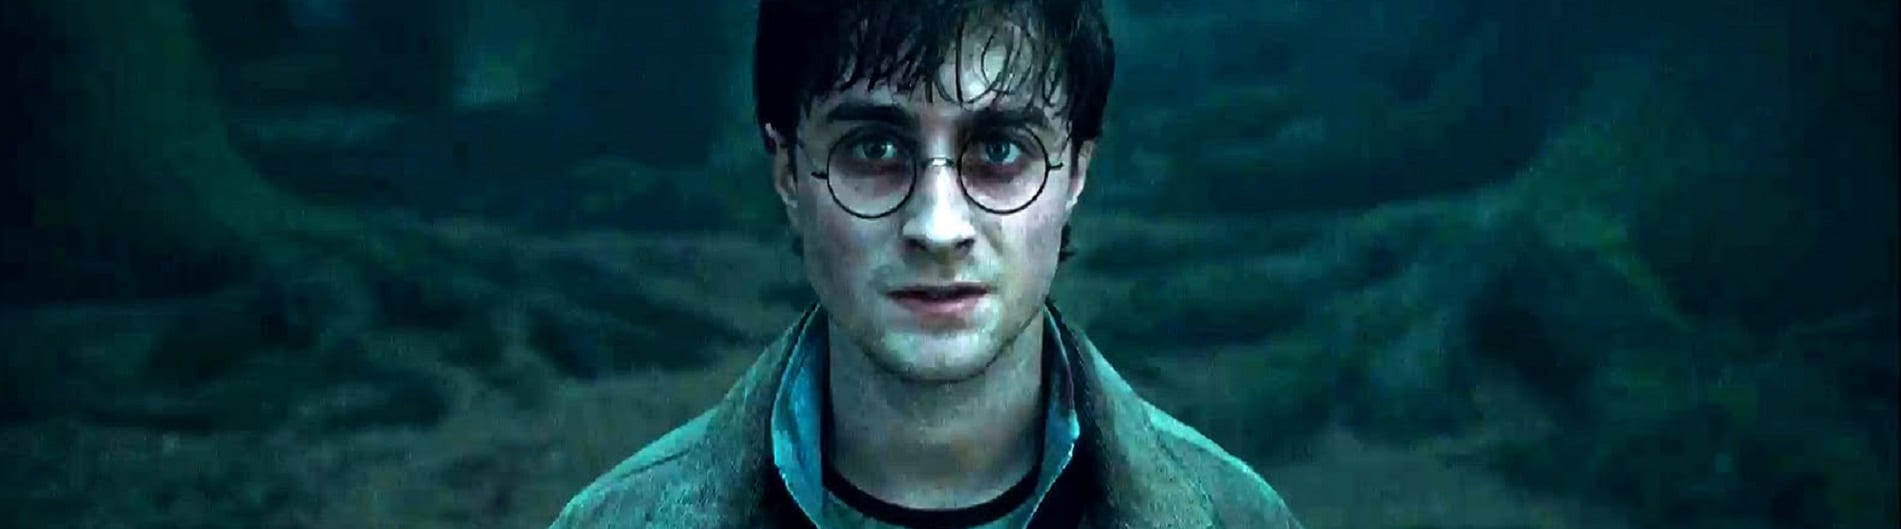 Harry potter 7. Гарри Поттер 1 часть. Нарл Гарри Поттер. Harry Potter and the Deathly Hallows Part 1 Daniel Radcliffe. Дэниел Рэдклифф в фильме Затерянный город.